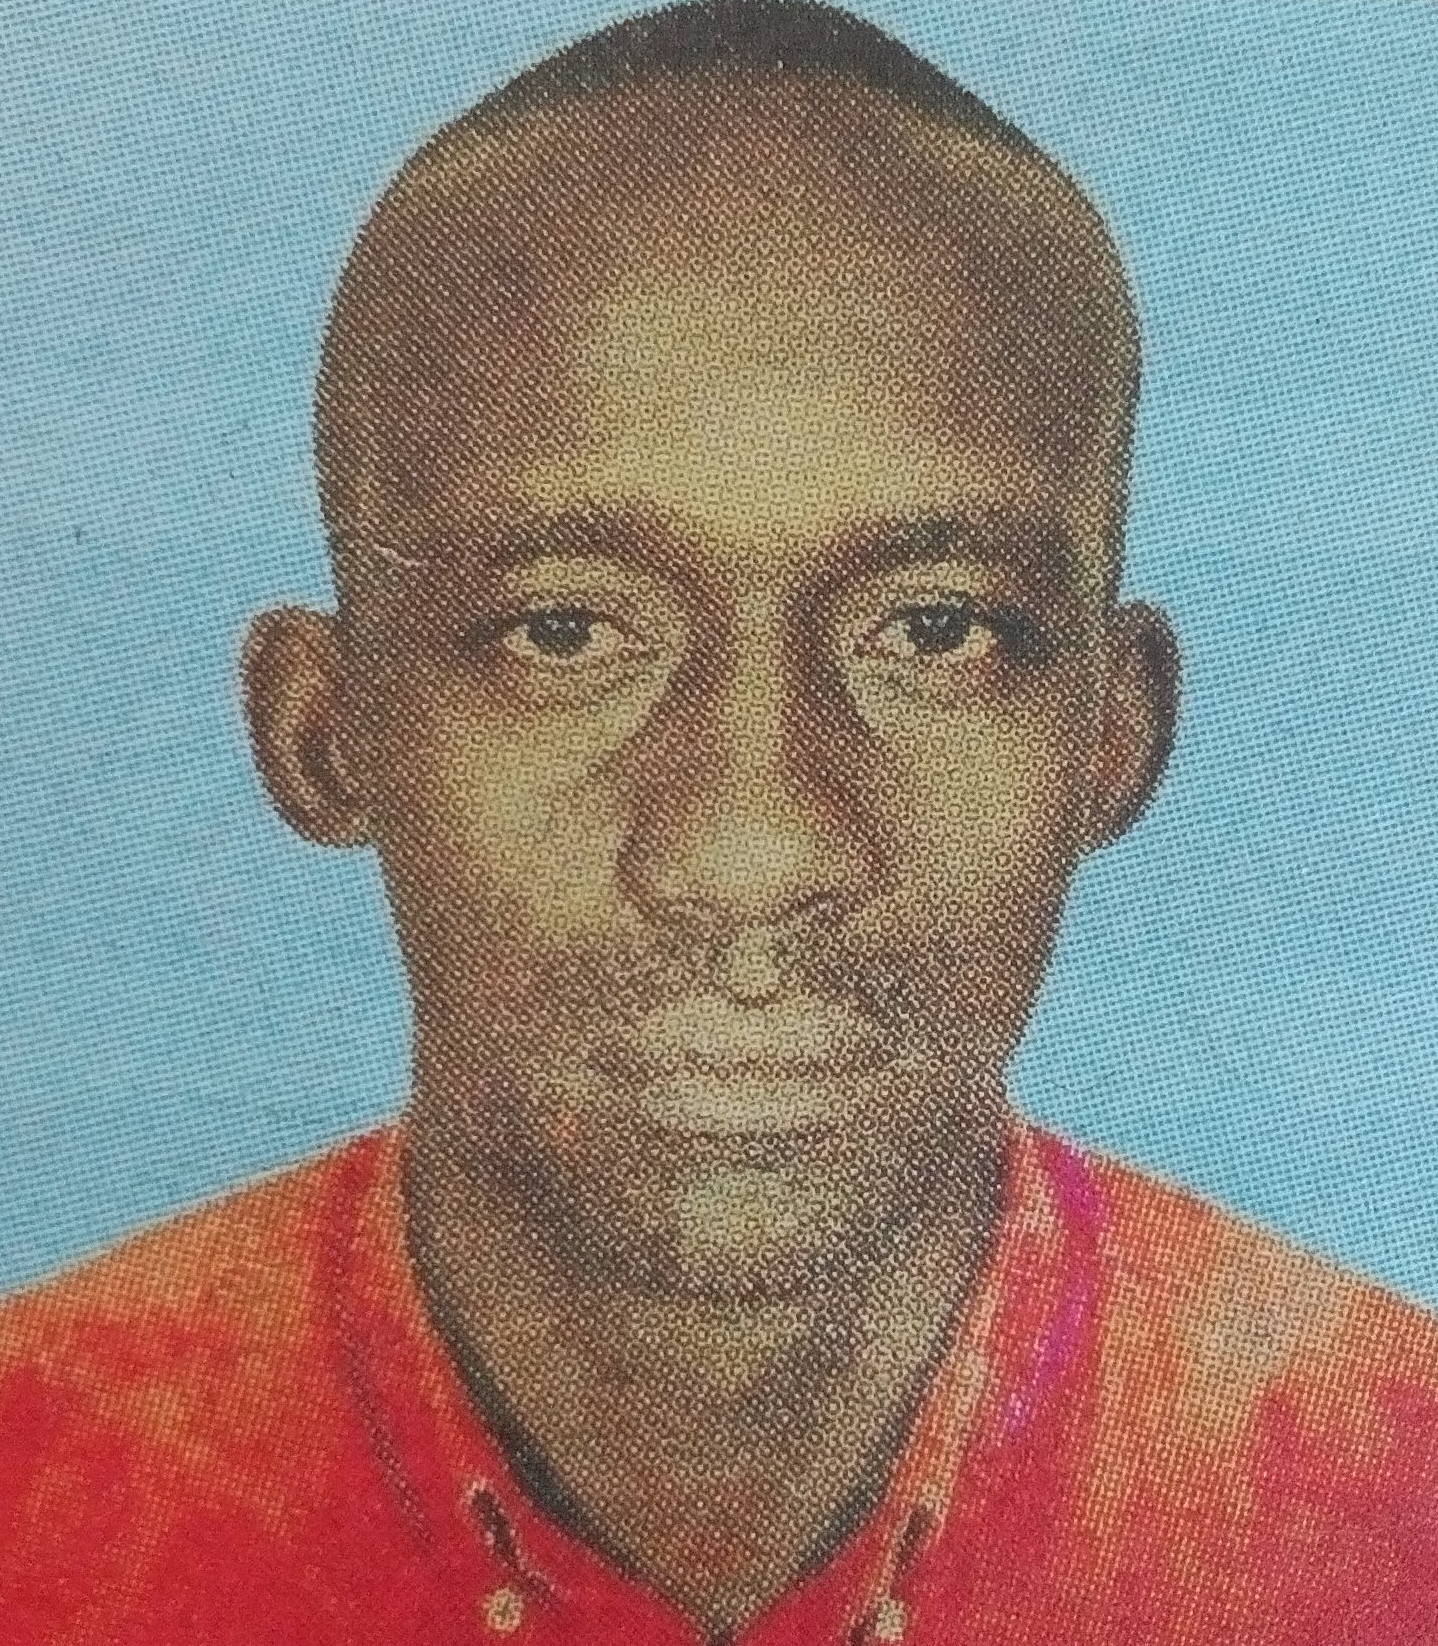 Obituary Image of Joseph Onginjo Anindo